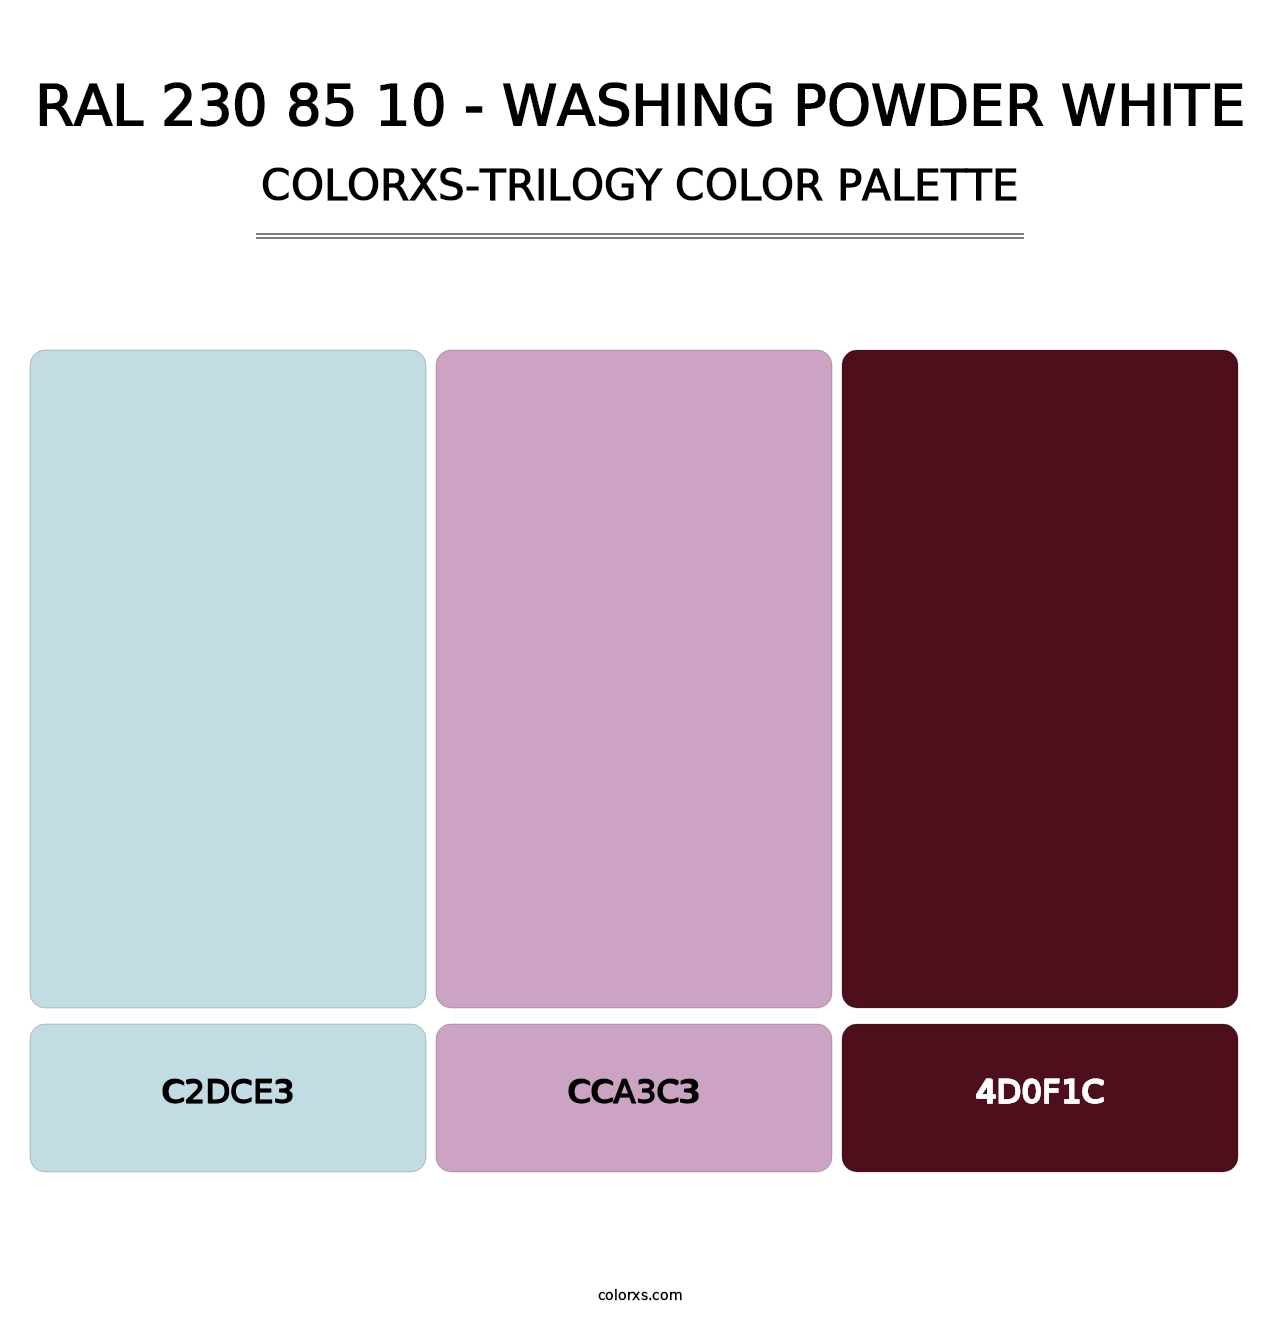 RAL 230 85 10 - Washing Powder White - Colorxs Trilogy Palette